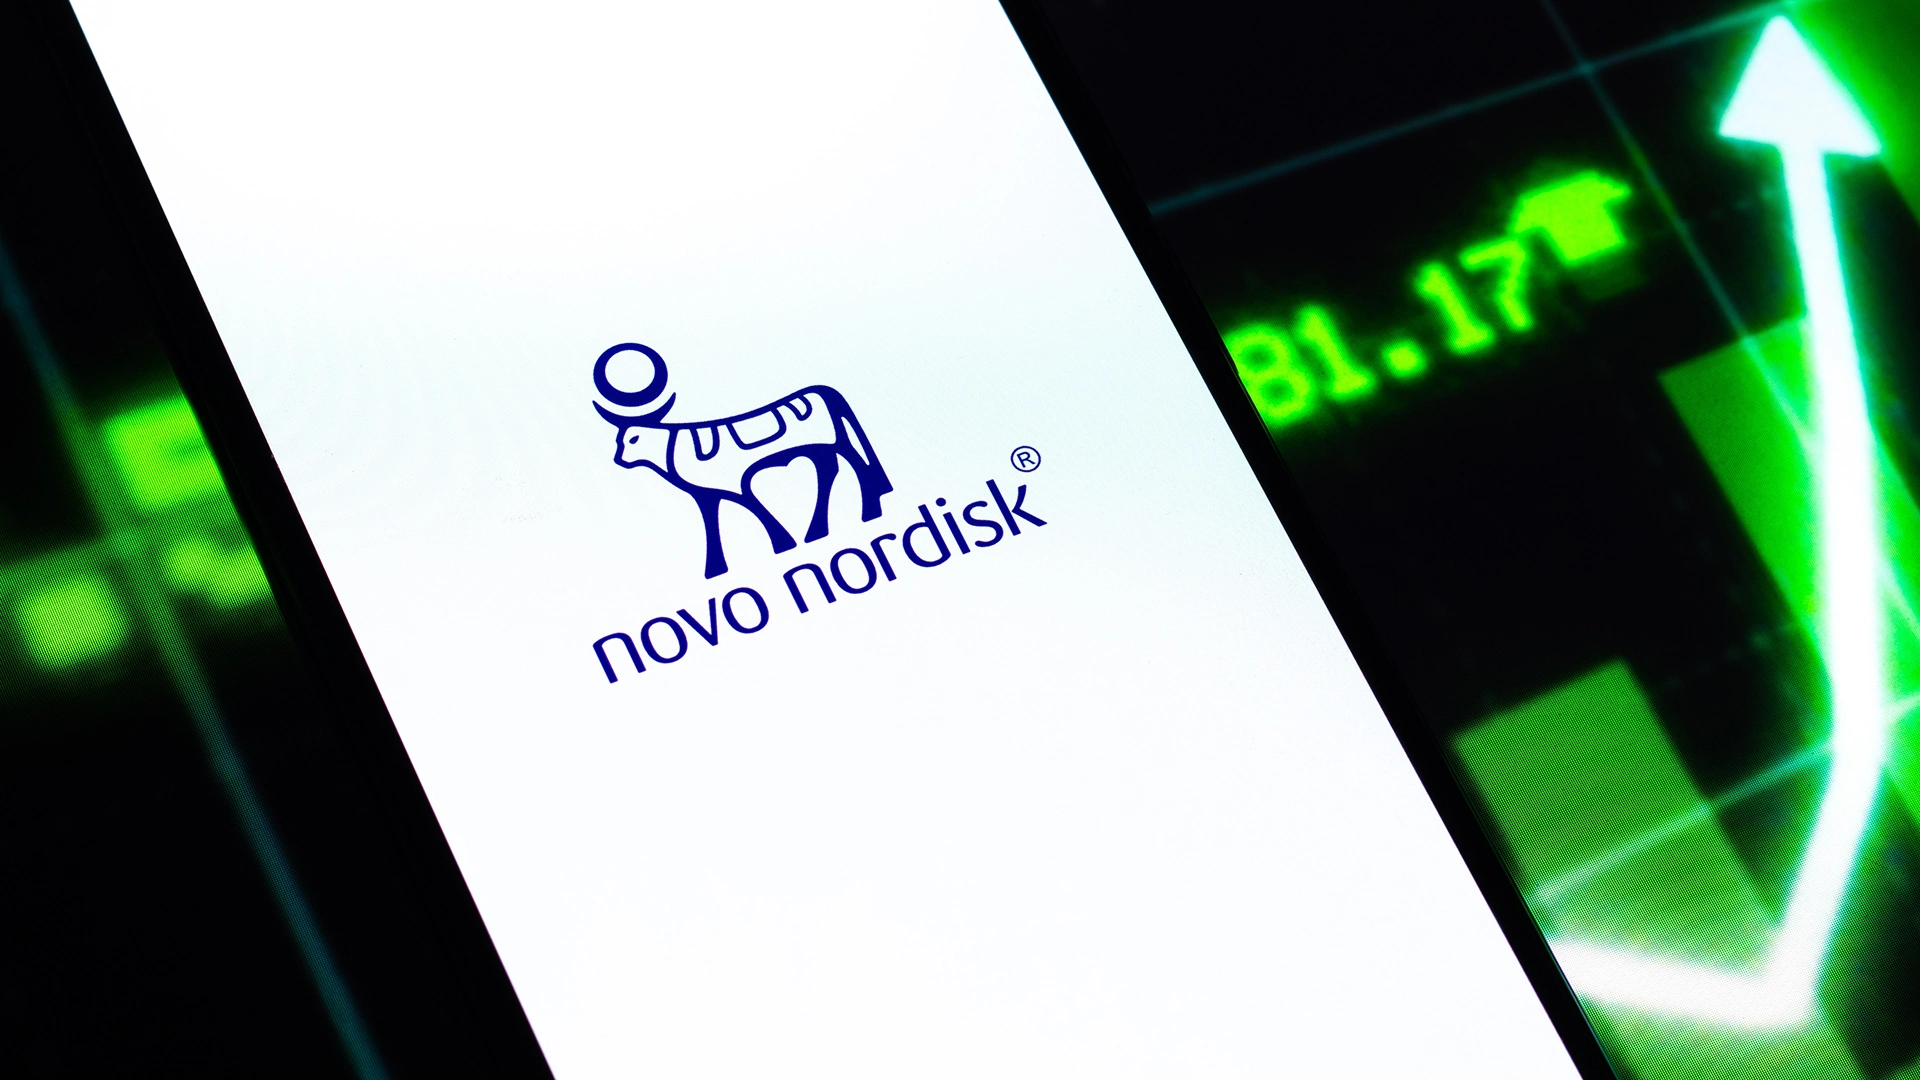 Neuer Meilenstein für Novo Nordisk: Ist die nächste Rallye für die Biotech&#8209;Aktie jetzt sicher? (Foto: sdx15/Shutterstock)